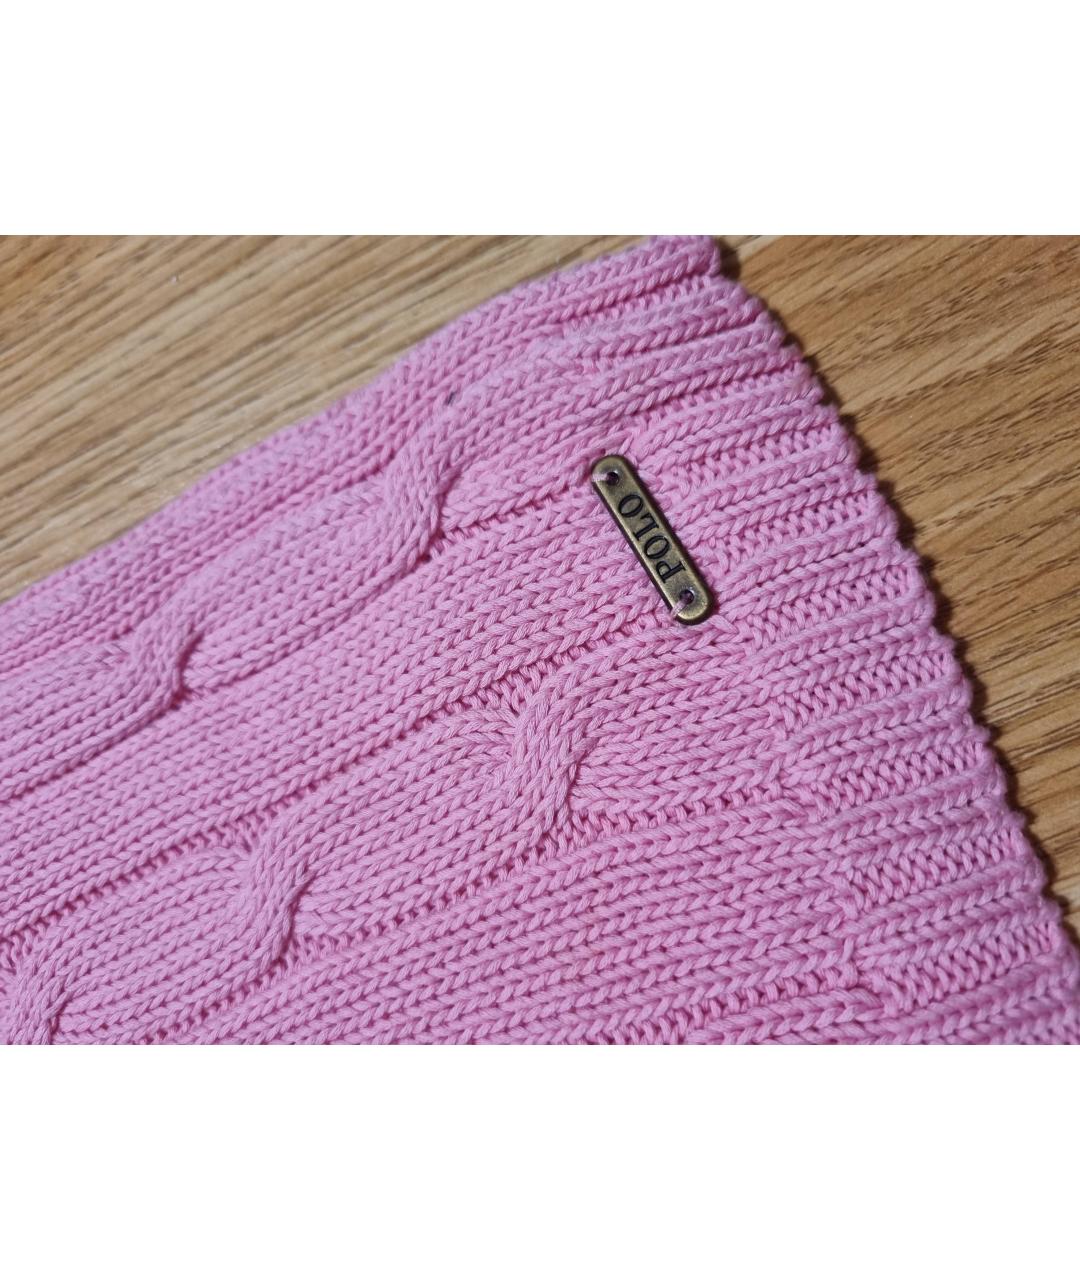 POLO RALPH LAUREN Розовый хлопковый джемпер / свитер, фото 3